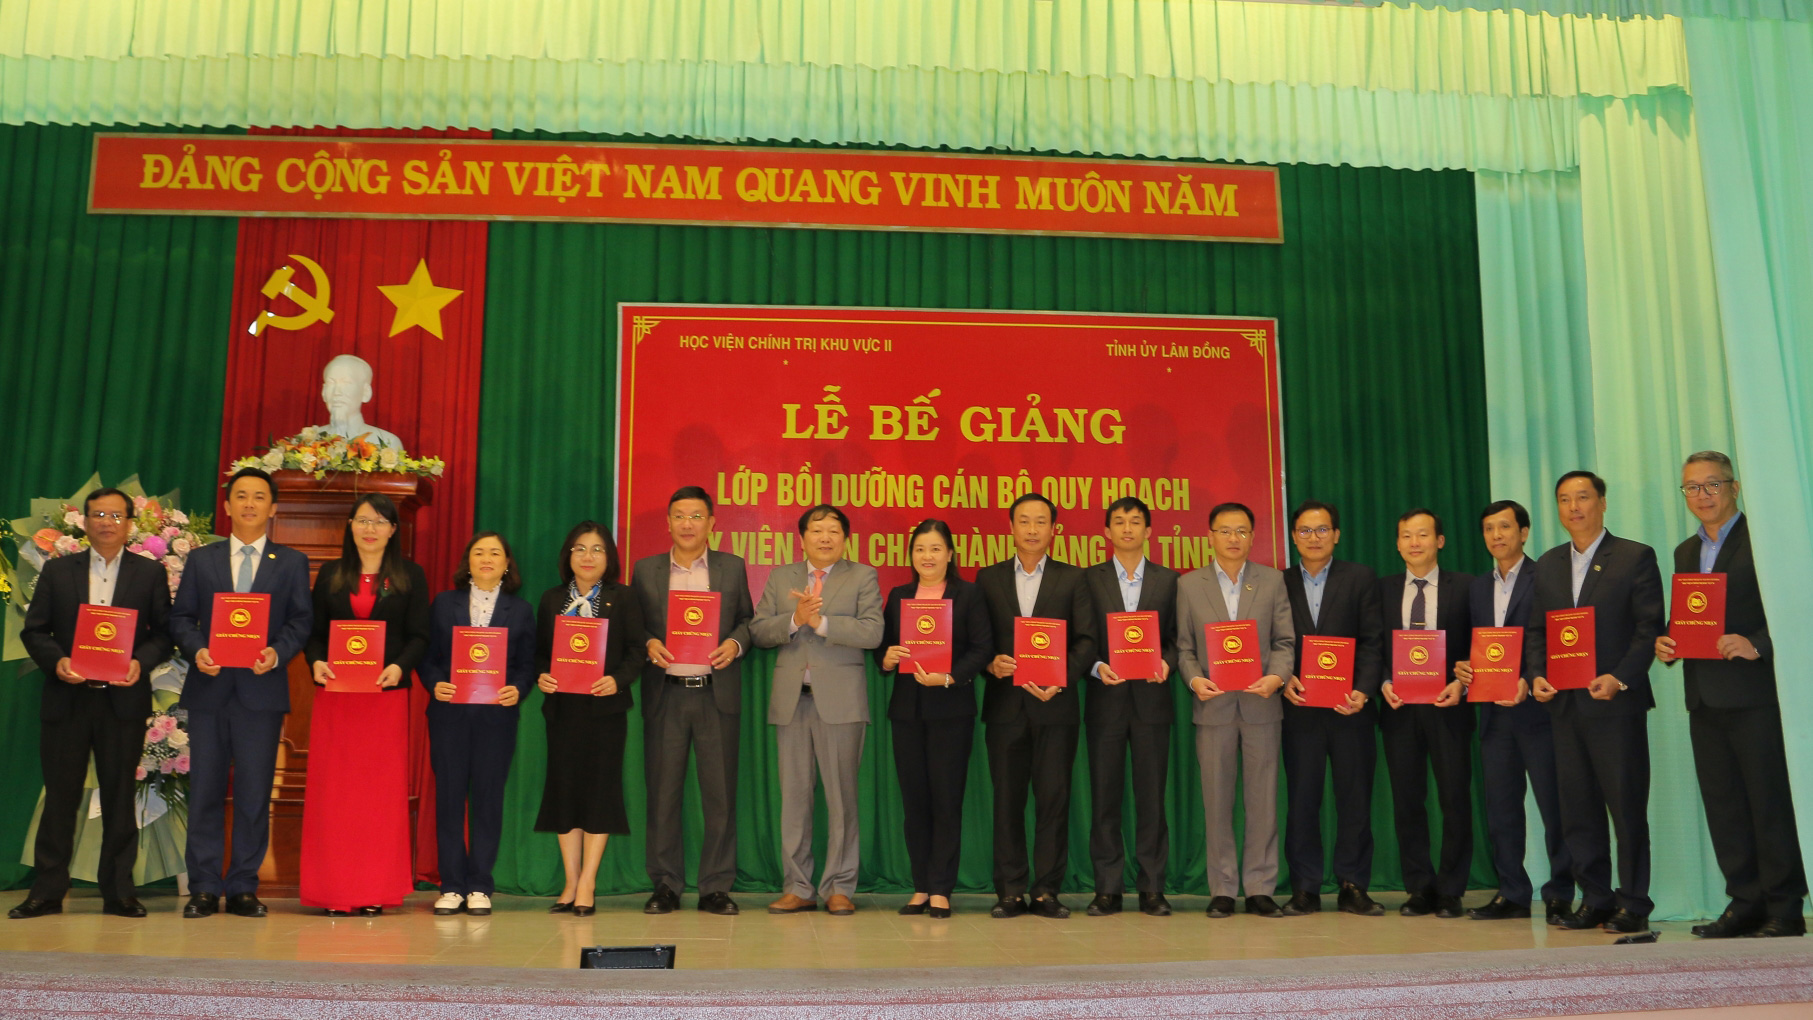 Đồng chí Nguyễn Vĩnh Phúc - Hiệu trưởng Trường Chính trị tỉnh, thành viên Ban Chỉ đạo lớp bồi dưỡng trao giấy chứng nhận cho các học viên